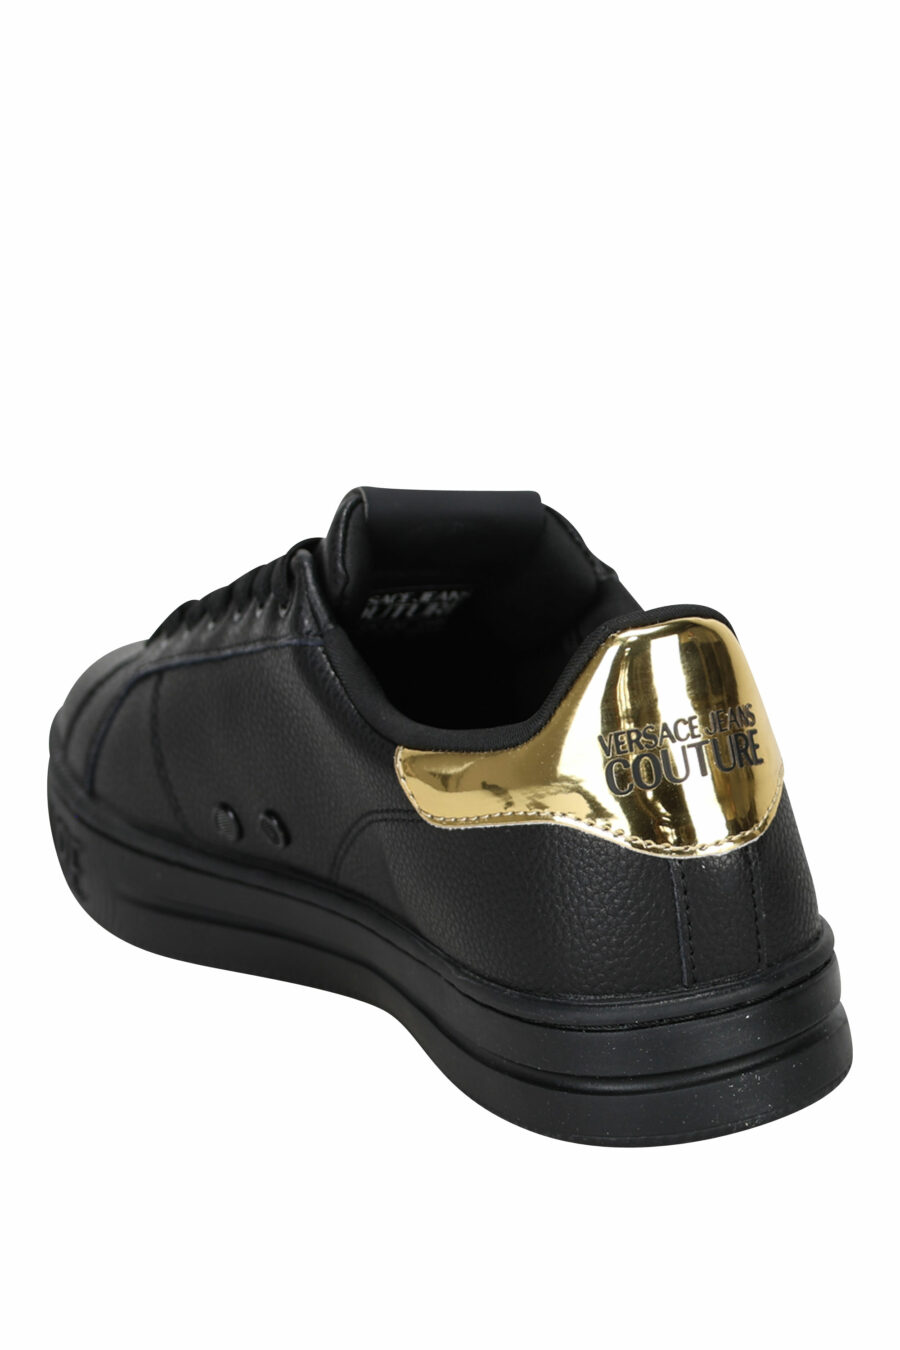 Schwarze Lederturnschuhe mit goldenen Details und rundem Logo - 8052019453560 3